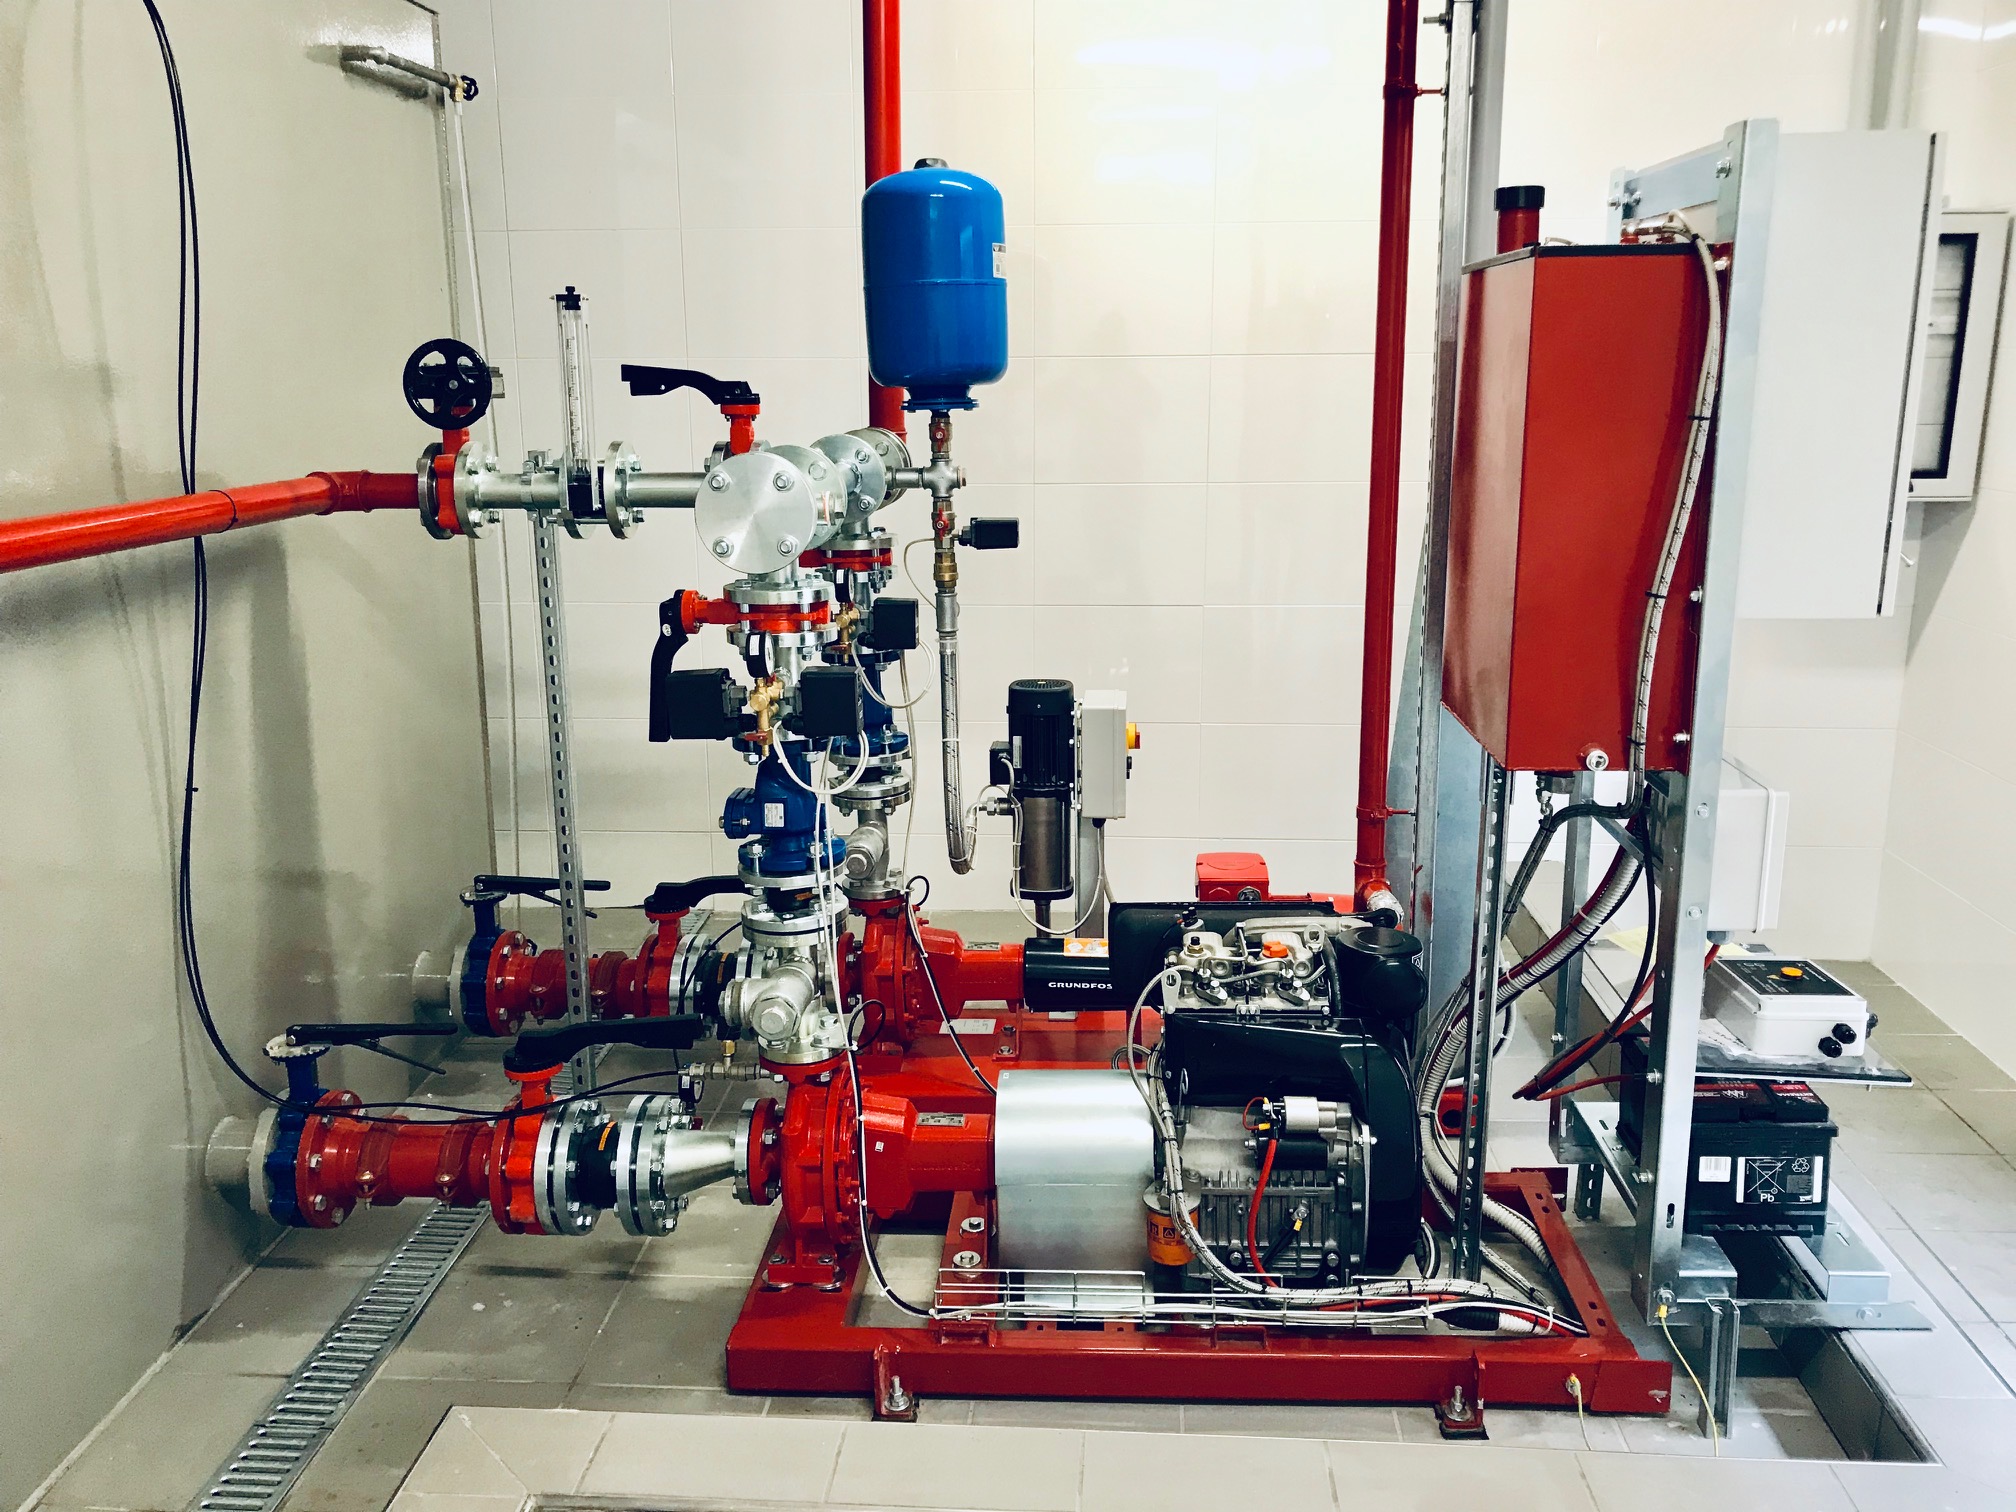 Centrale antincendio - Gruppo di pressurizzazione idrica impianto di spegnimento.